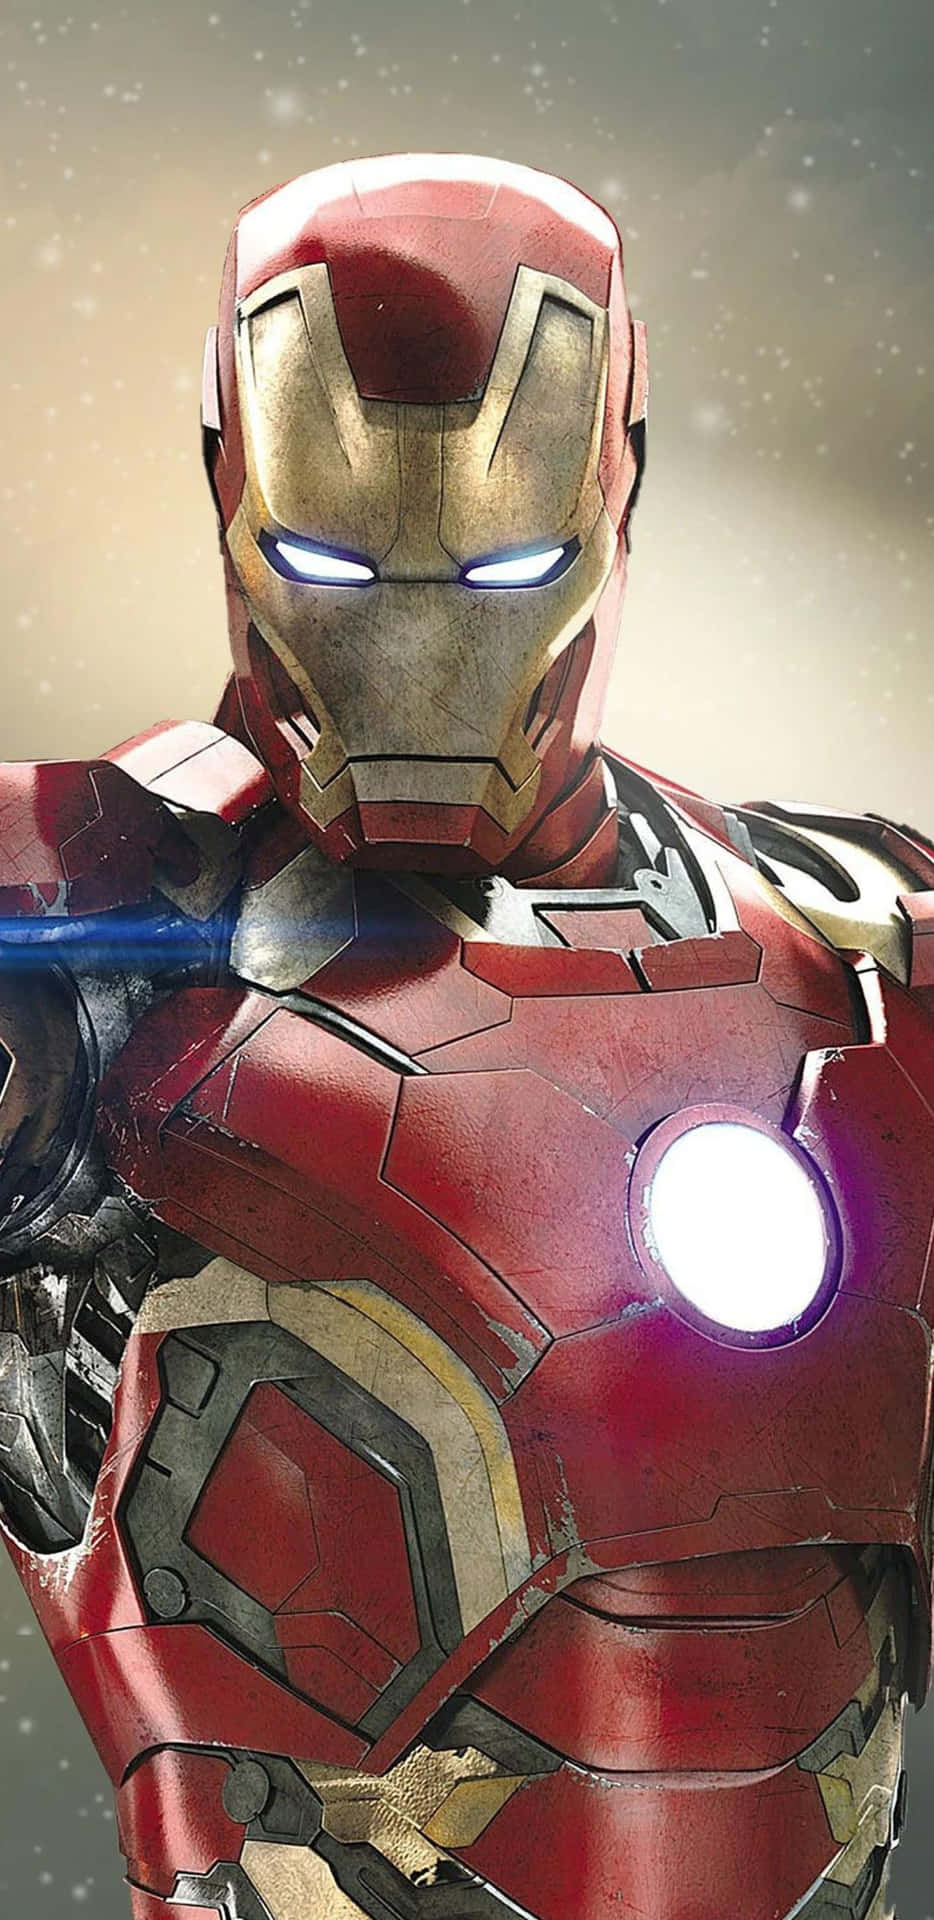 Pixel3xl Iron Man Repad Rustning Bakgrundsbild.